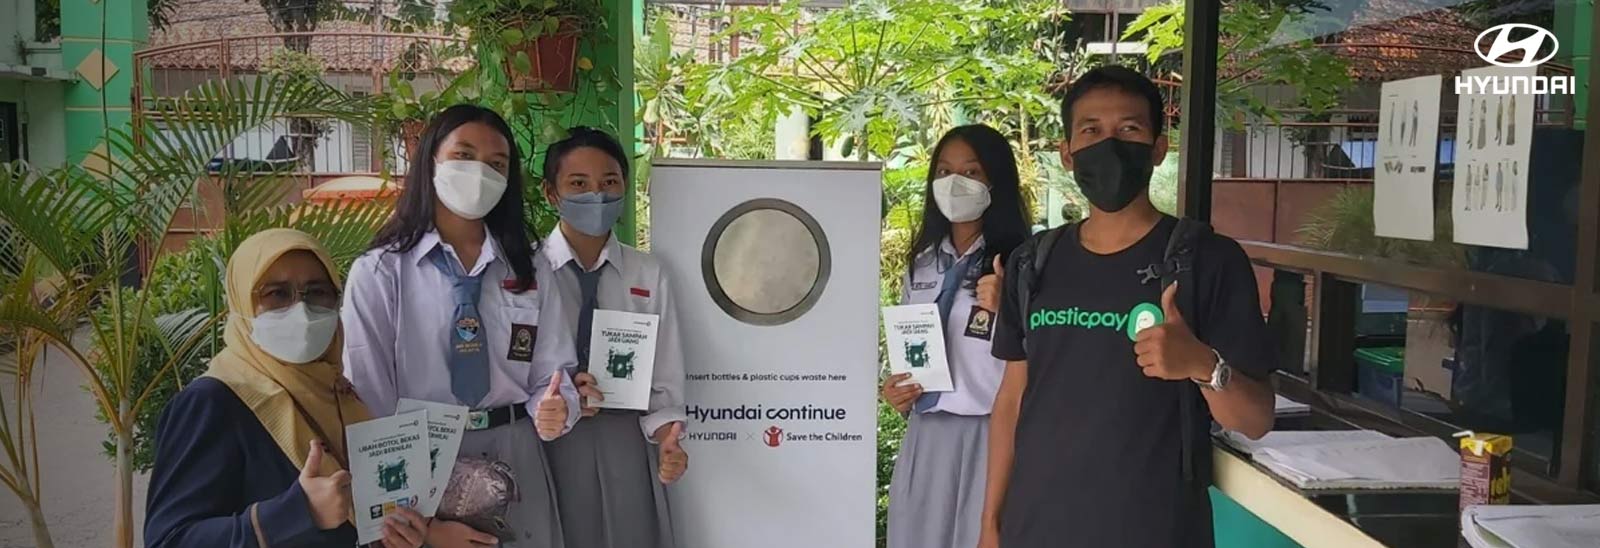 Jóvenes participando en programa hyundai continue en Indonesia